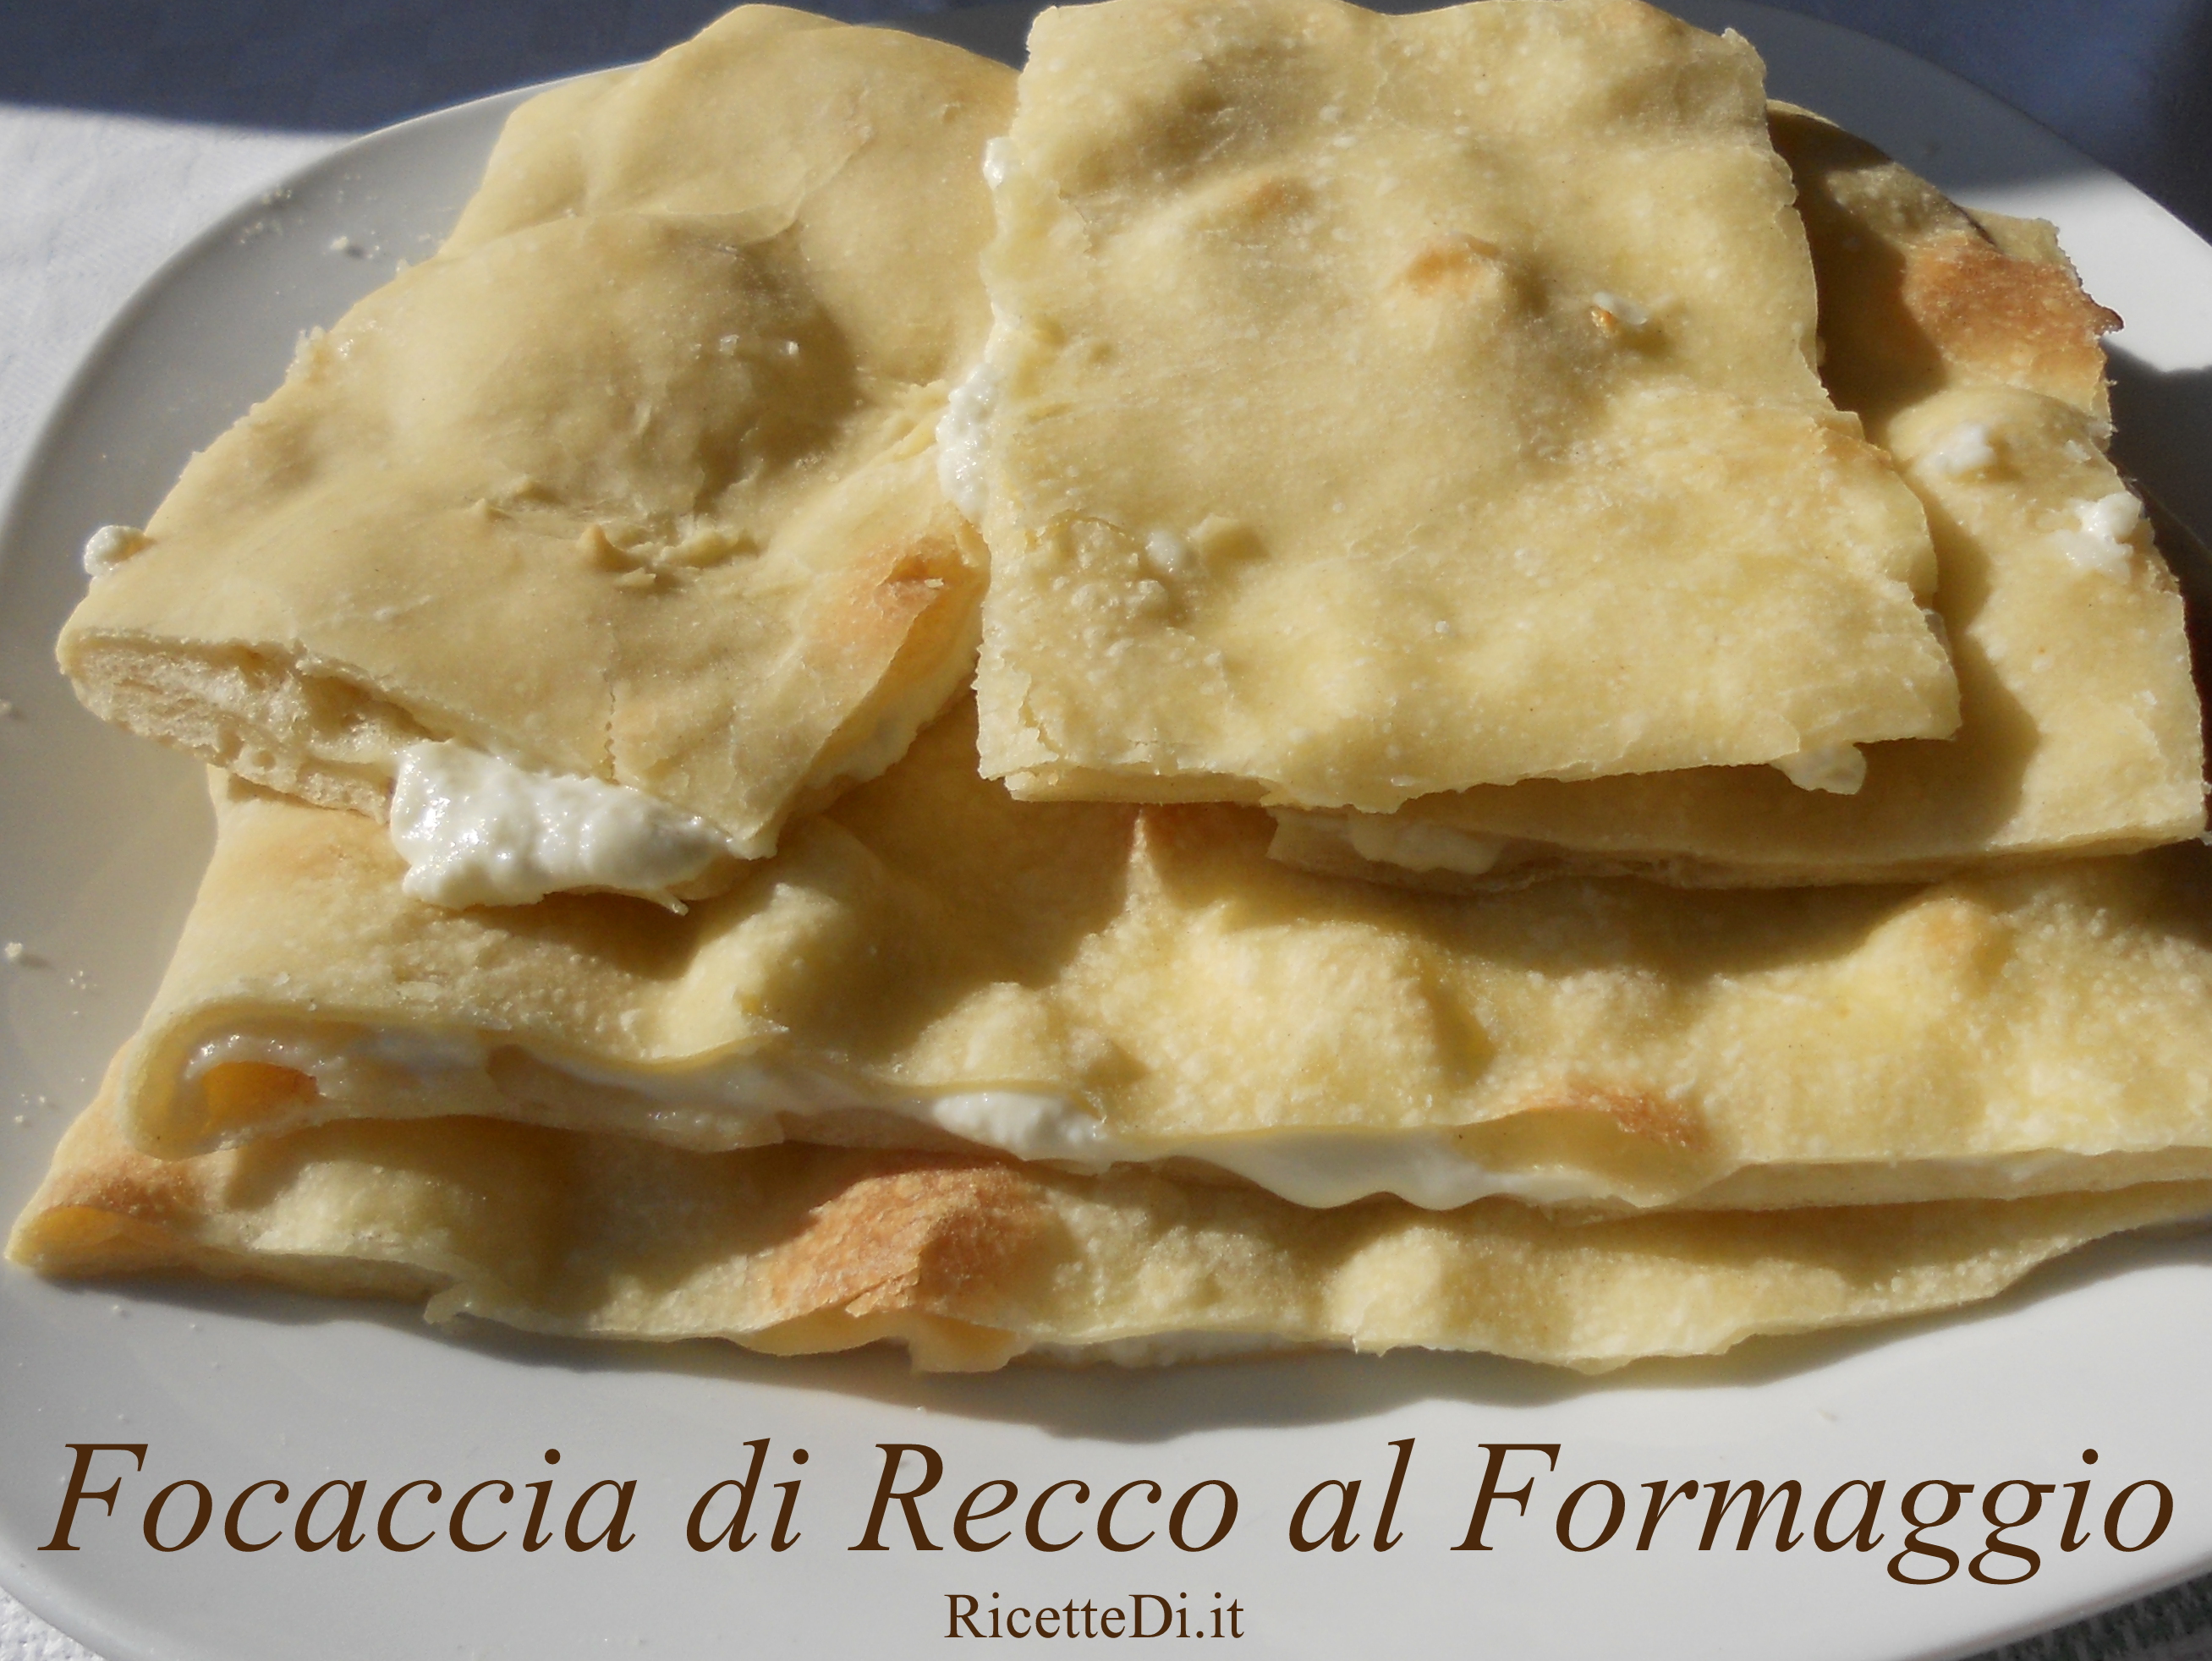 01_focaccia_di_recco_al_formaggio.jpg